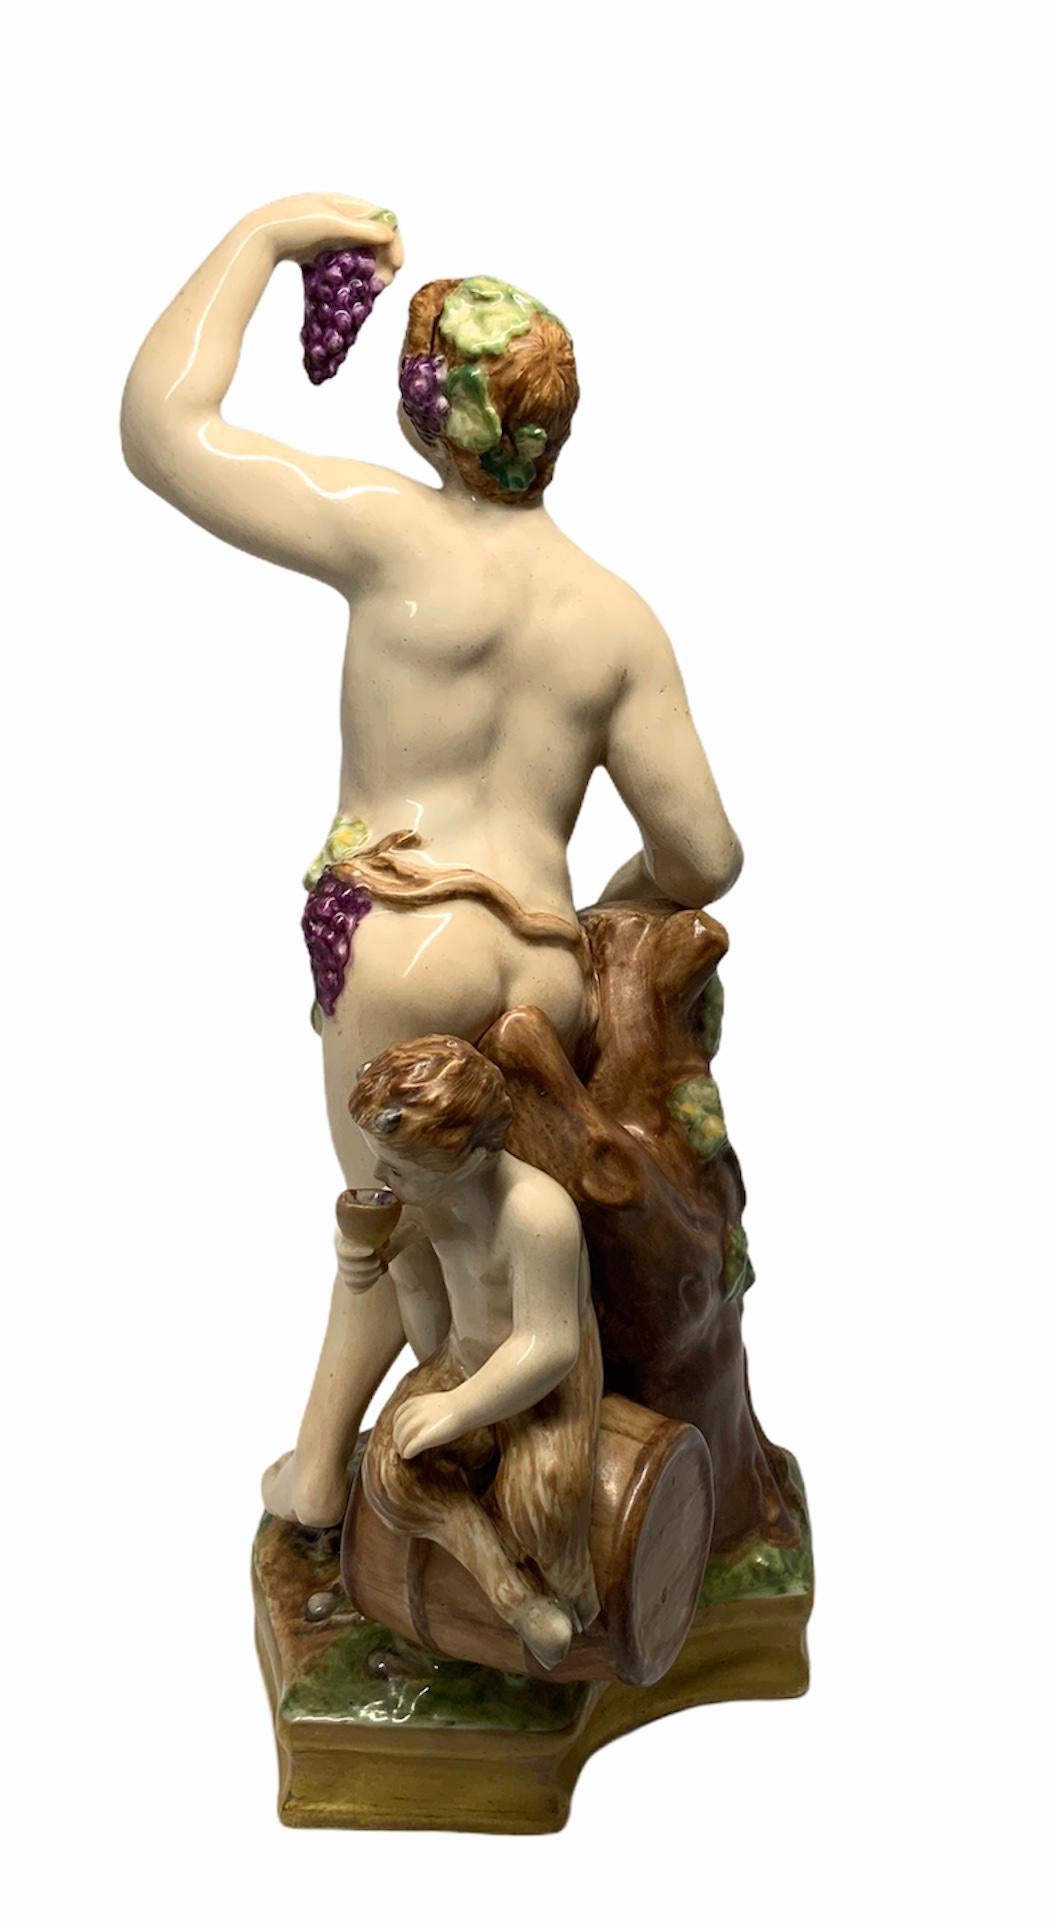 Il s'agit d'une porcelaine peinte à la main représentant un Bacchus semi-nu debout devant un tronc d'arbre coupé et tenant une grappe de raisin. Derrière lui se trouve un enfant faune qui boit une coupe de vin, assis au-dessus d'un tonneau de vin.